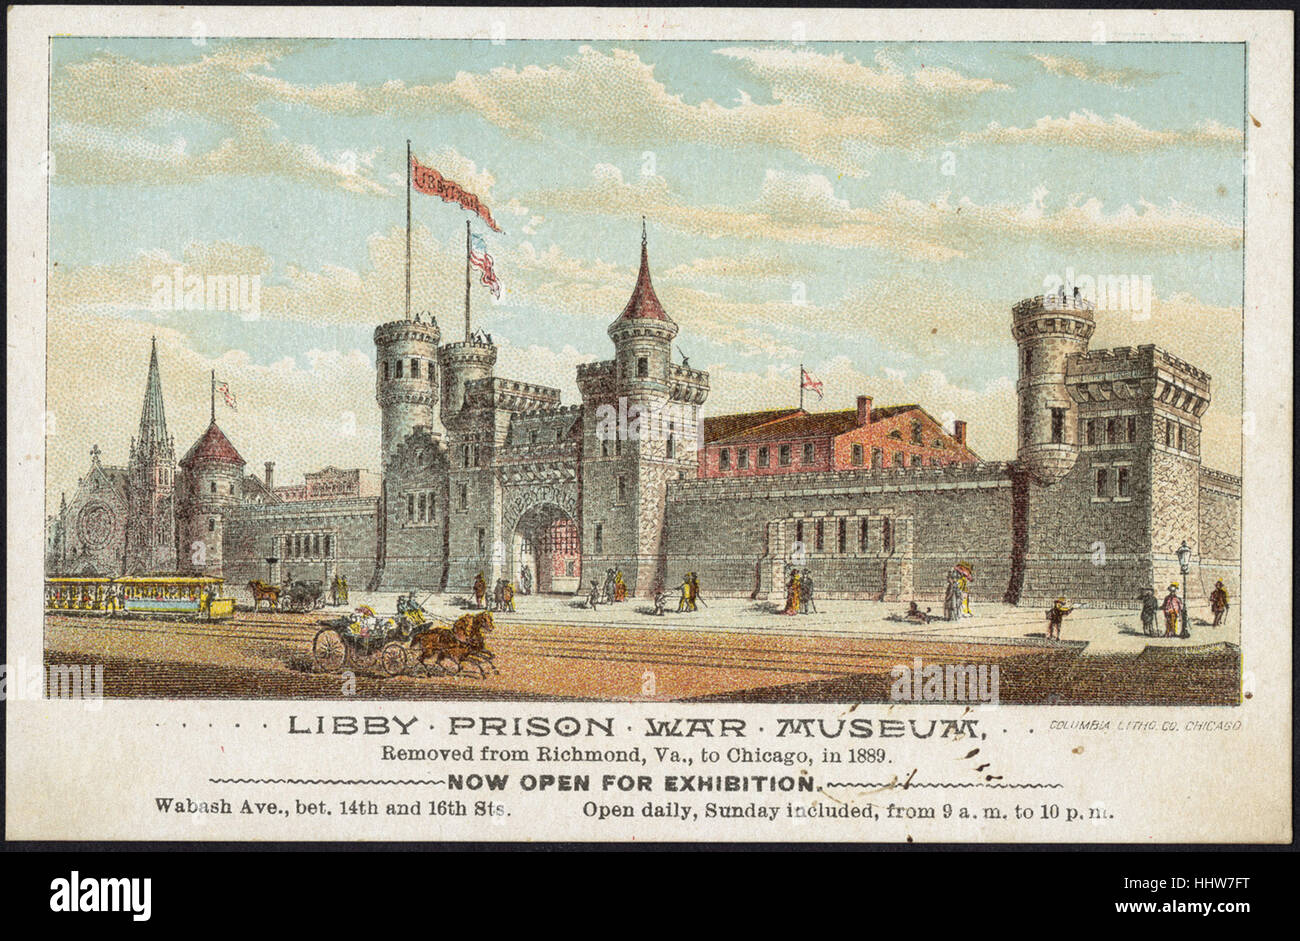 Libby Prison Kriegsmuseum entfernt von Richmond, VA., Chicago, 1889. [Personal] - Freizeit, Lesung und Travel Trade Cards Stockfoto